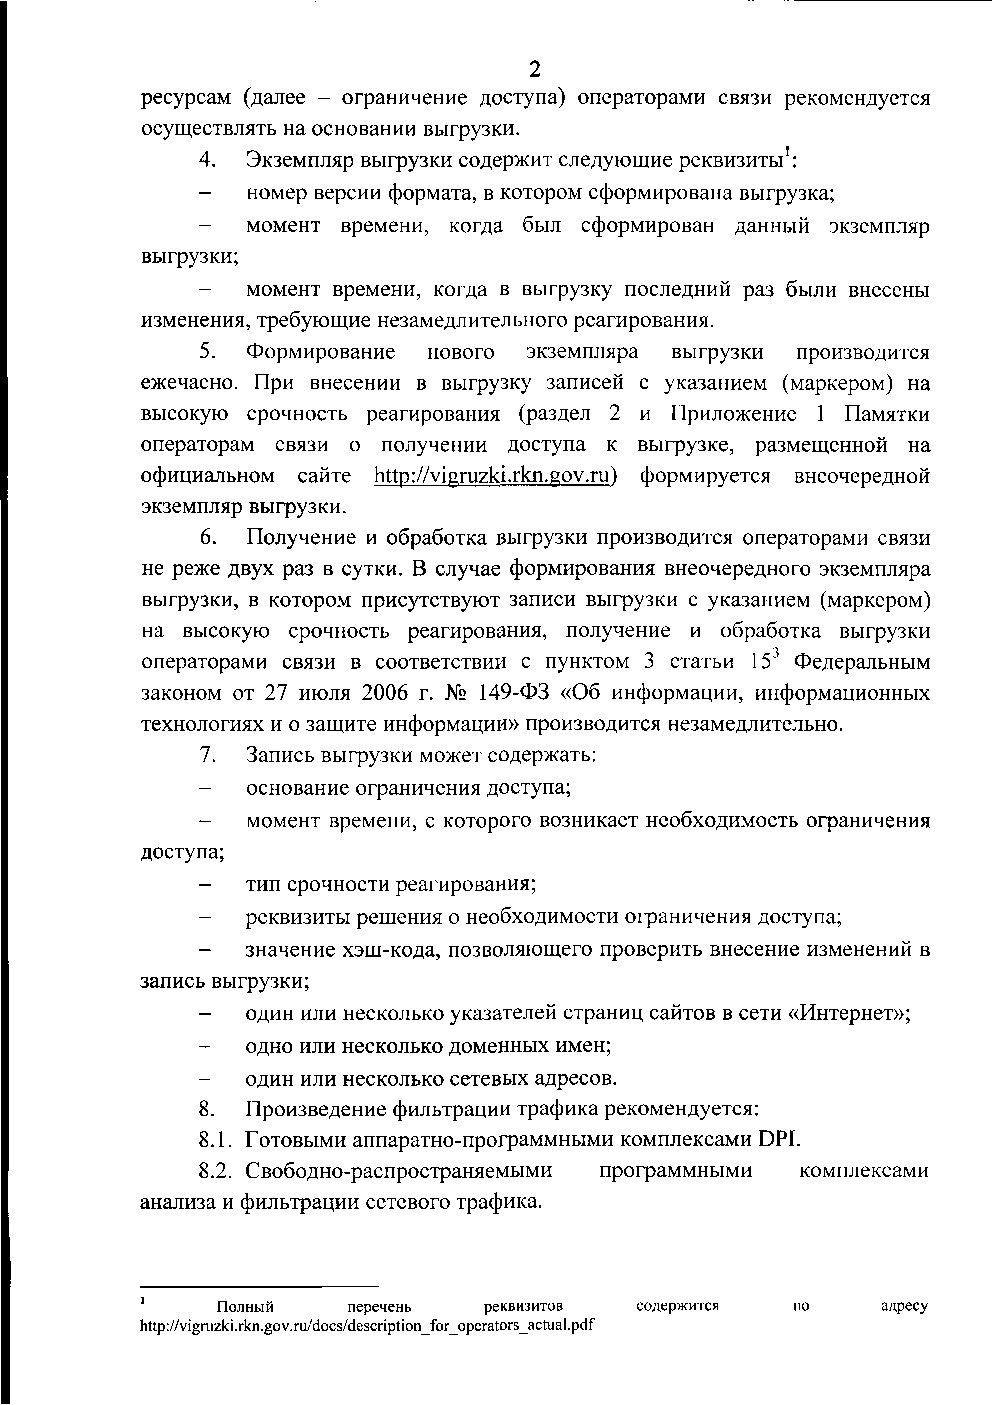 Новые рекомендации по ограничению доступа от «Роскомнадзора» - 5